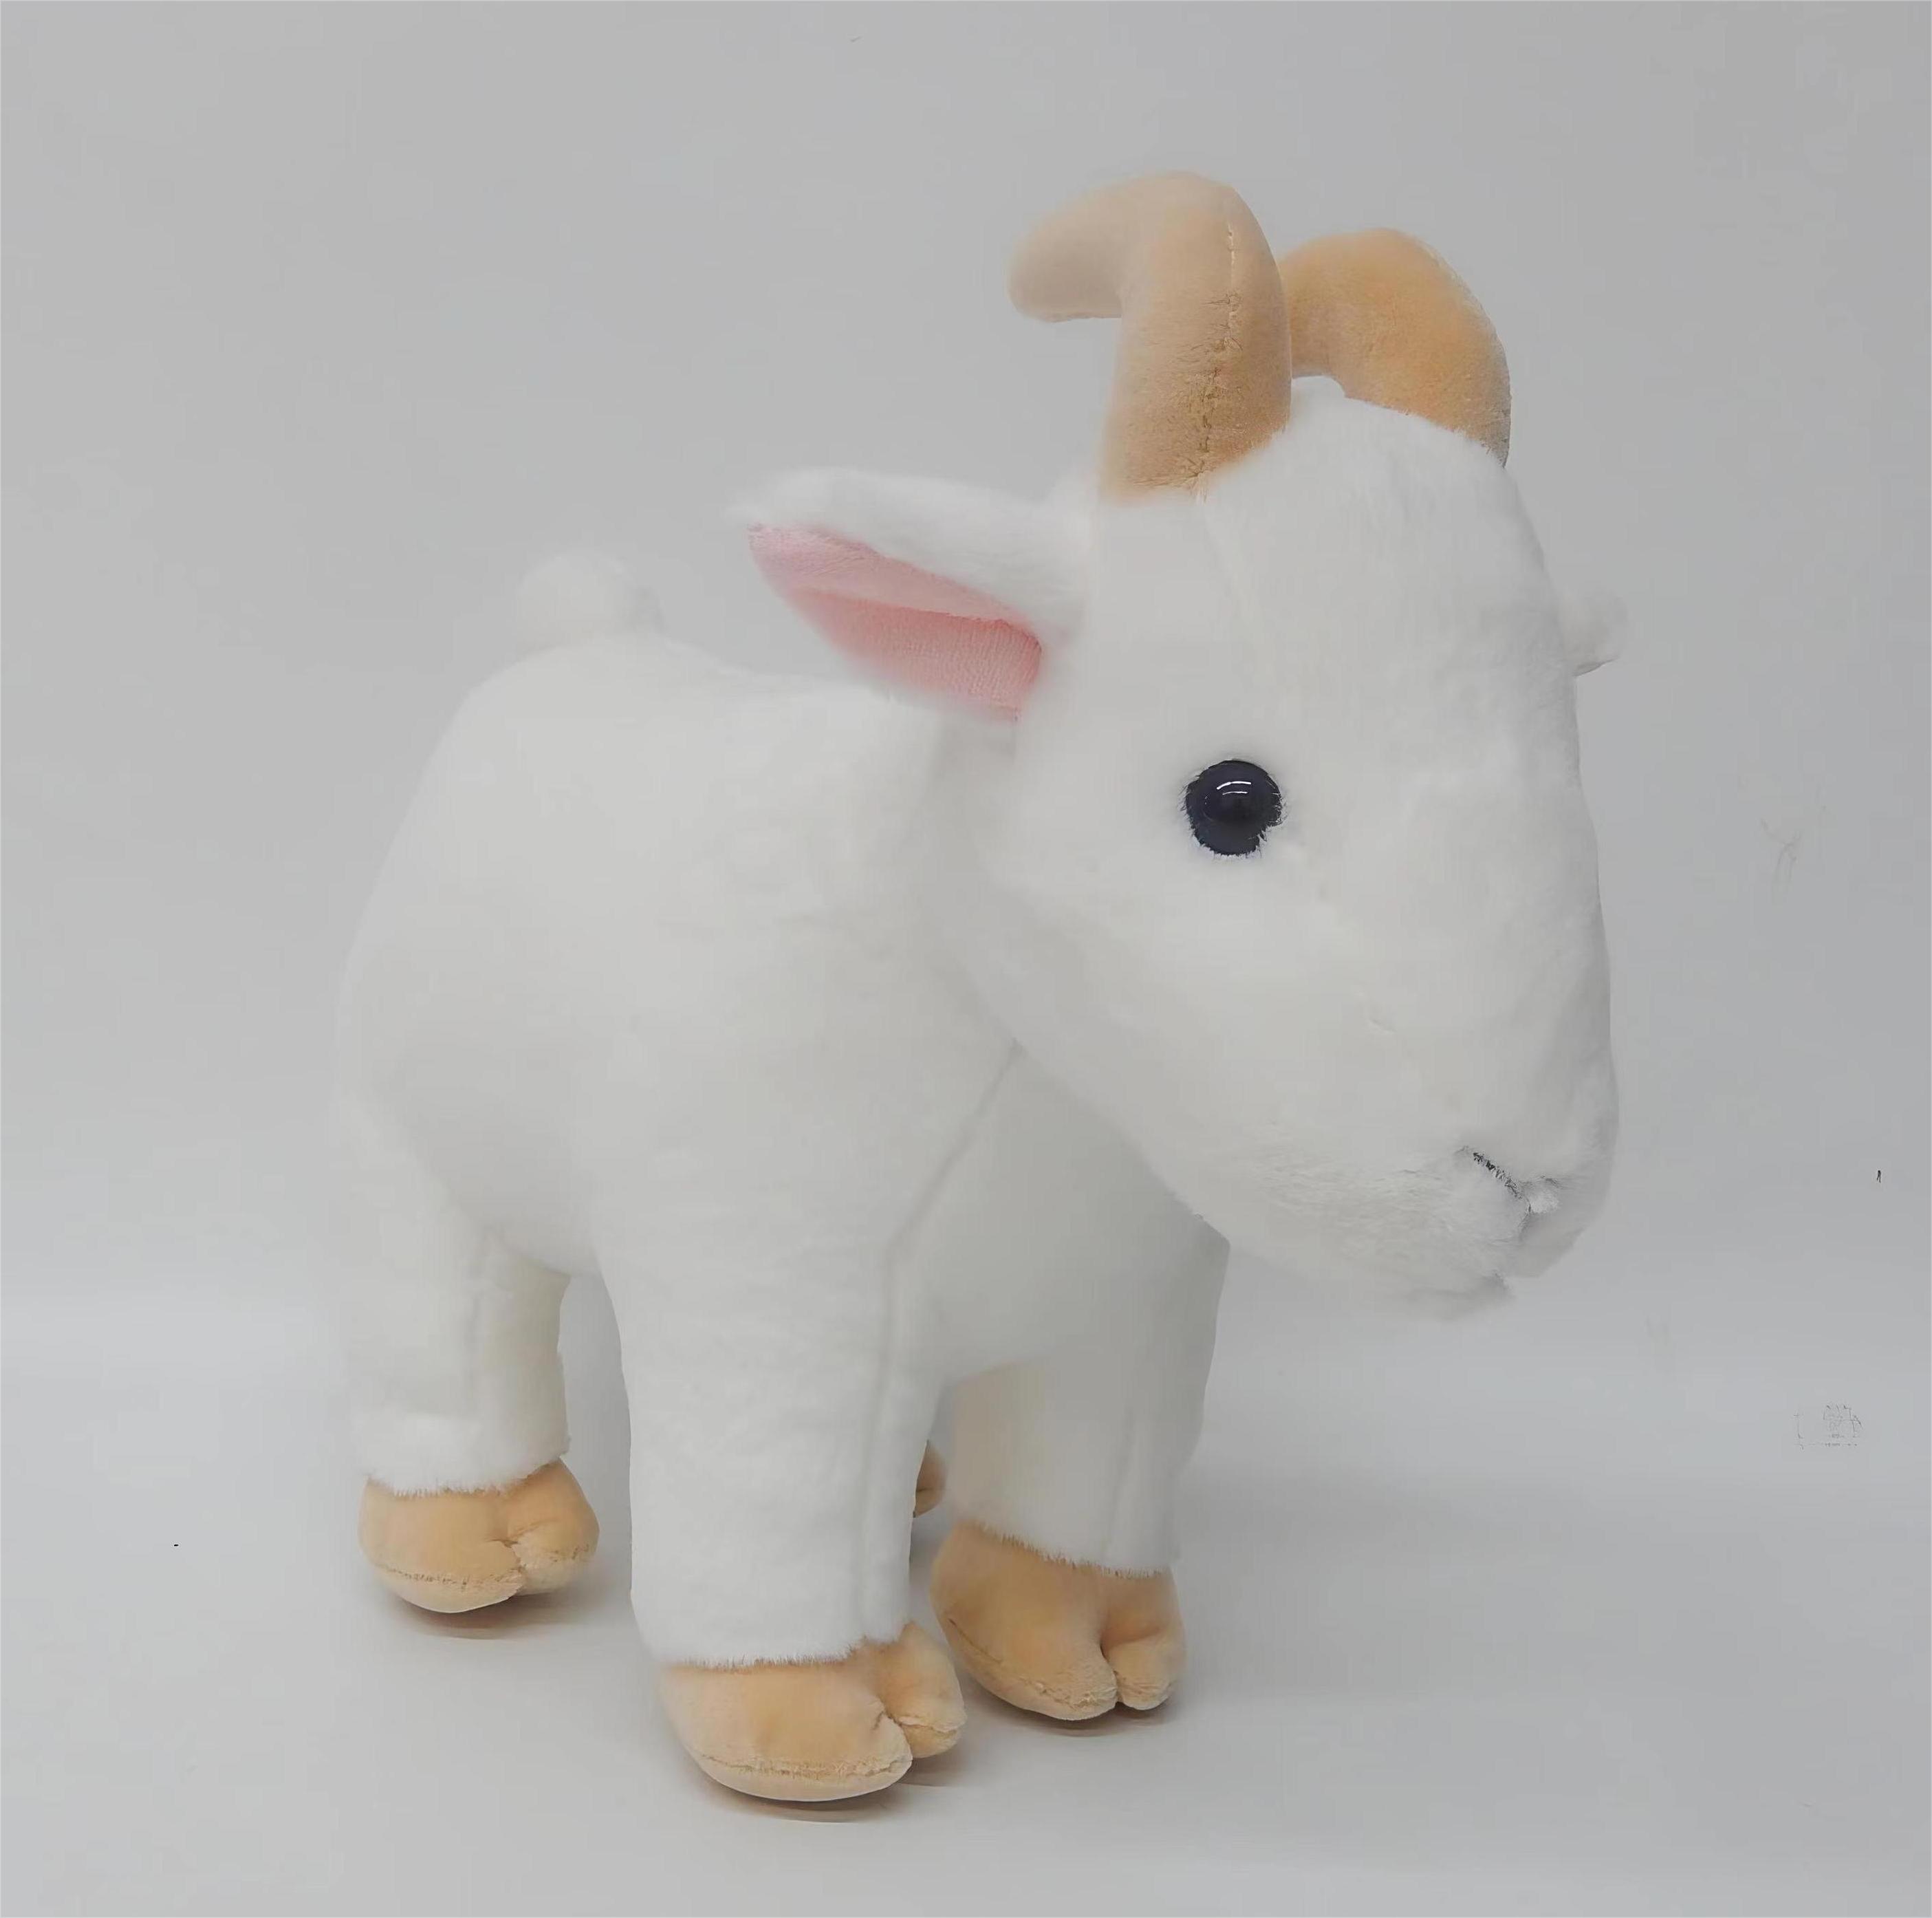  Плюшевая игрушка 'Snuggly Goat', супермягкая 10-дюймовая мягкая игрушка 'коза', очаровательная плюшевая игрушка 'коза' для детей и любителей животных